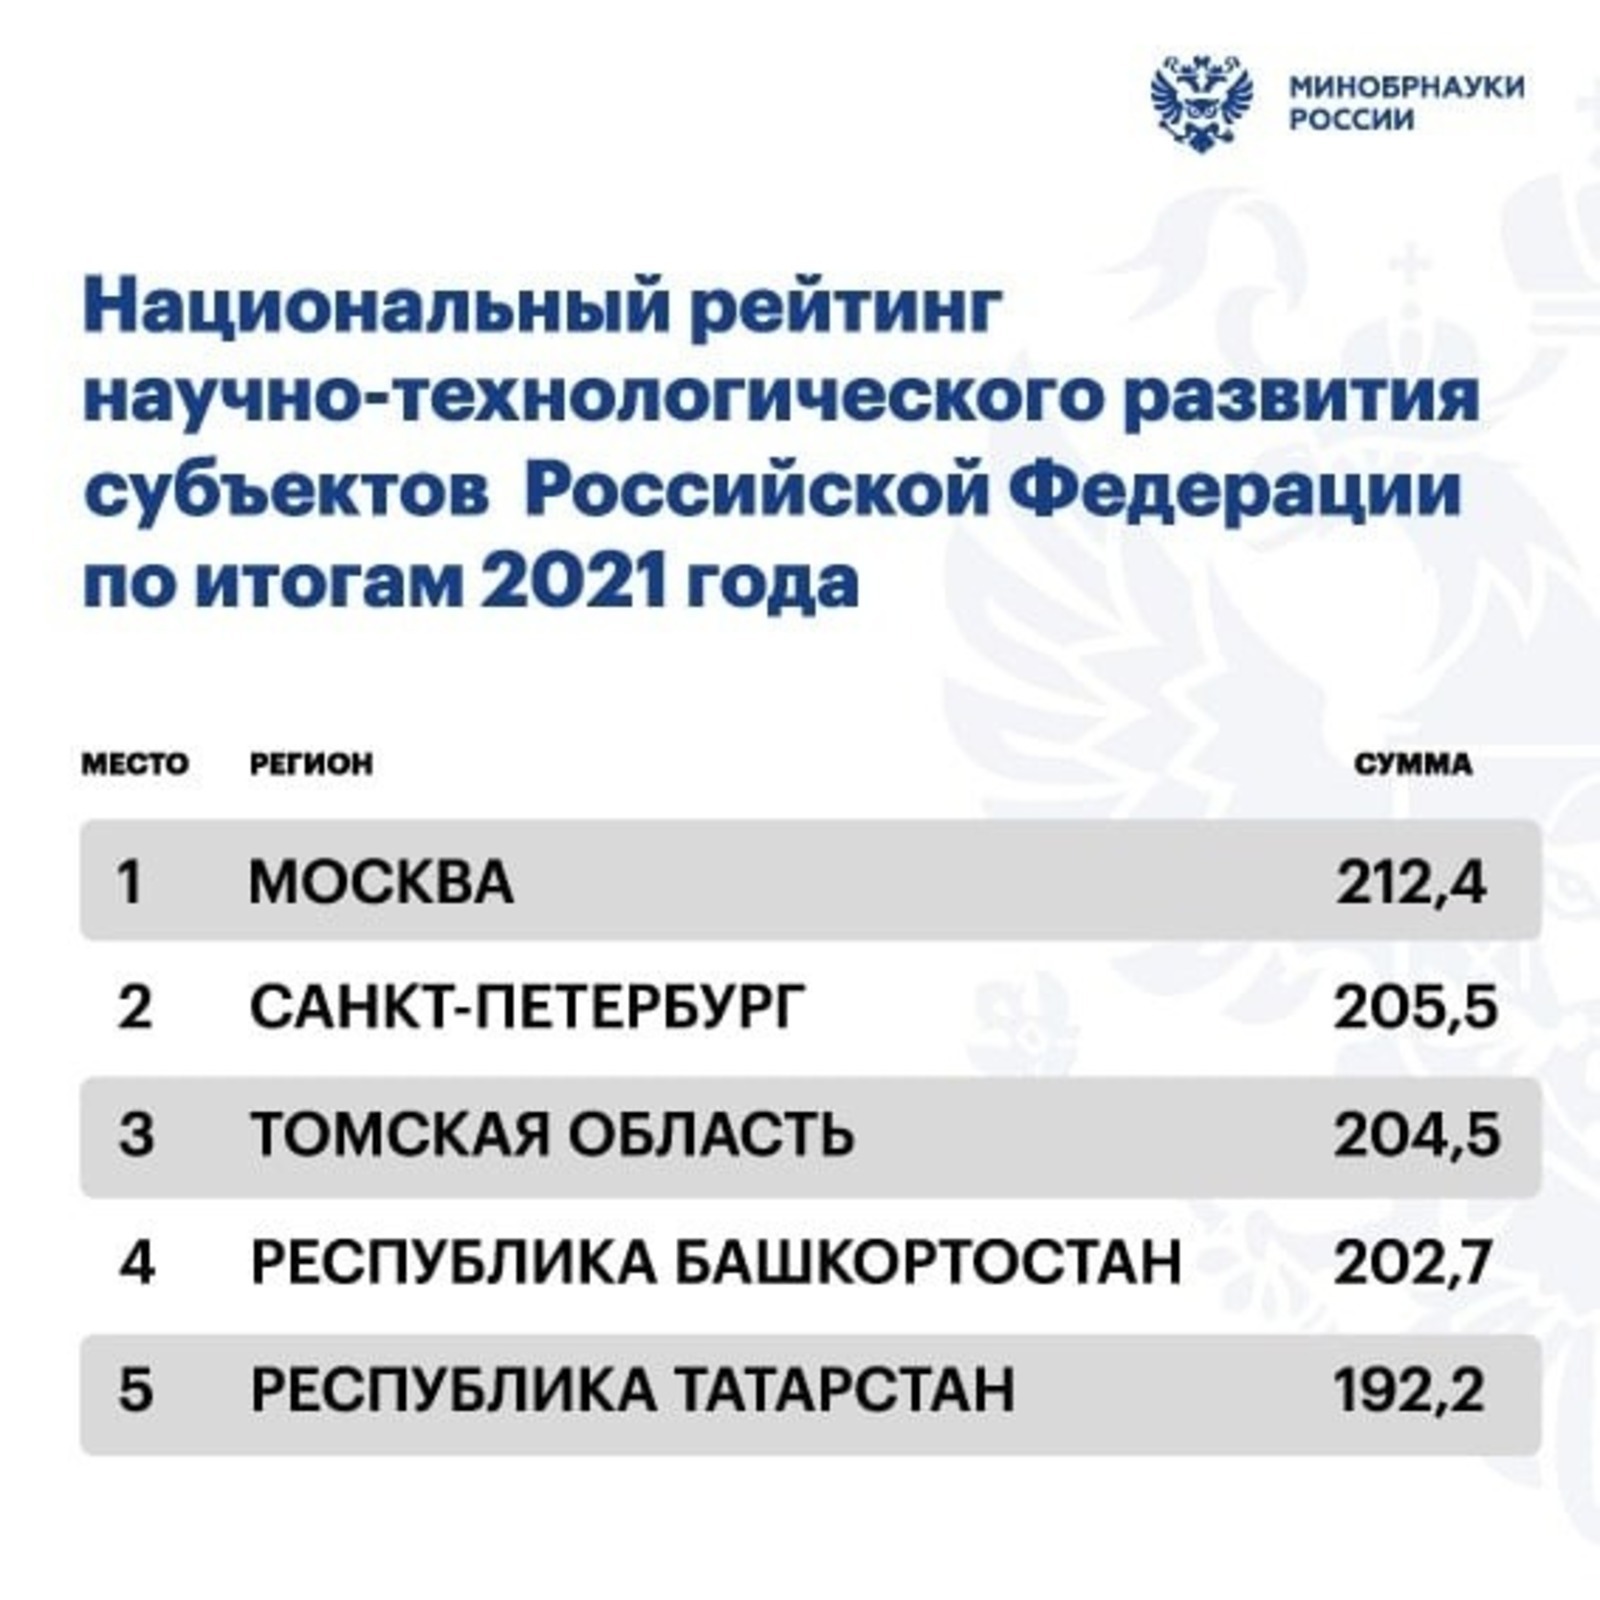 Башкирия вошла  в I Национальный рейтинг научно-технологического развития регионов